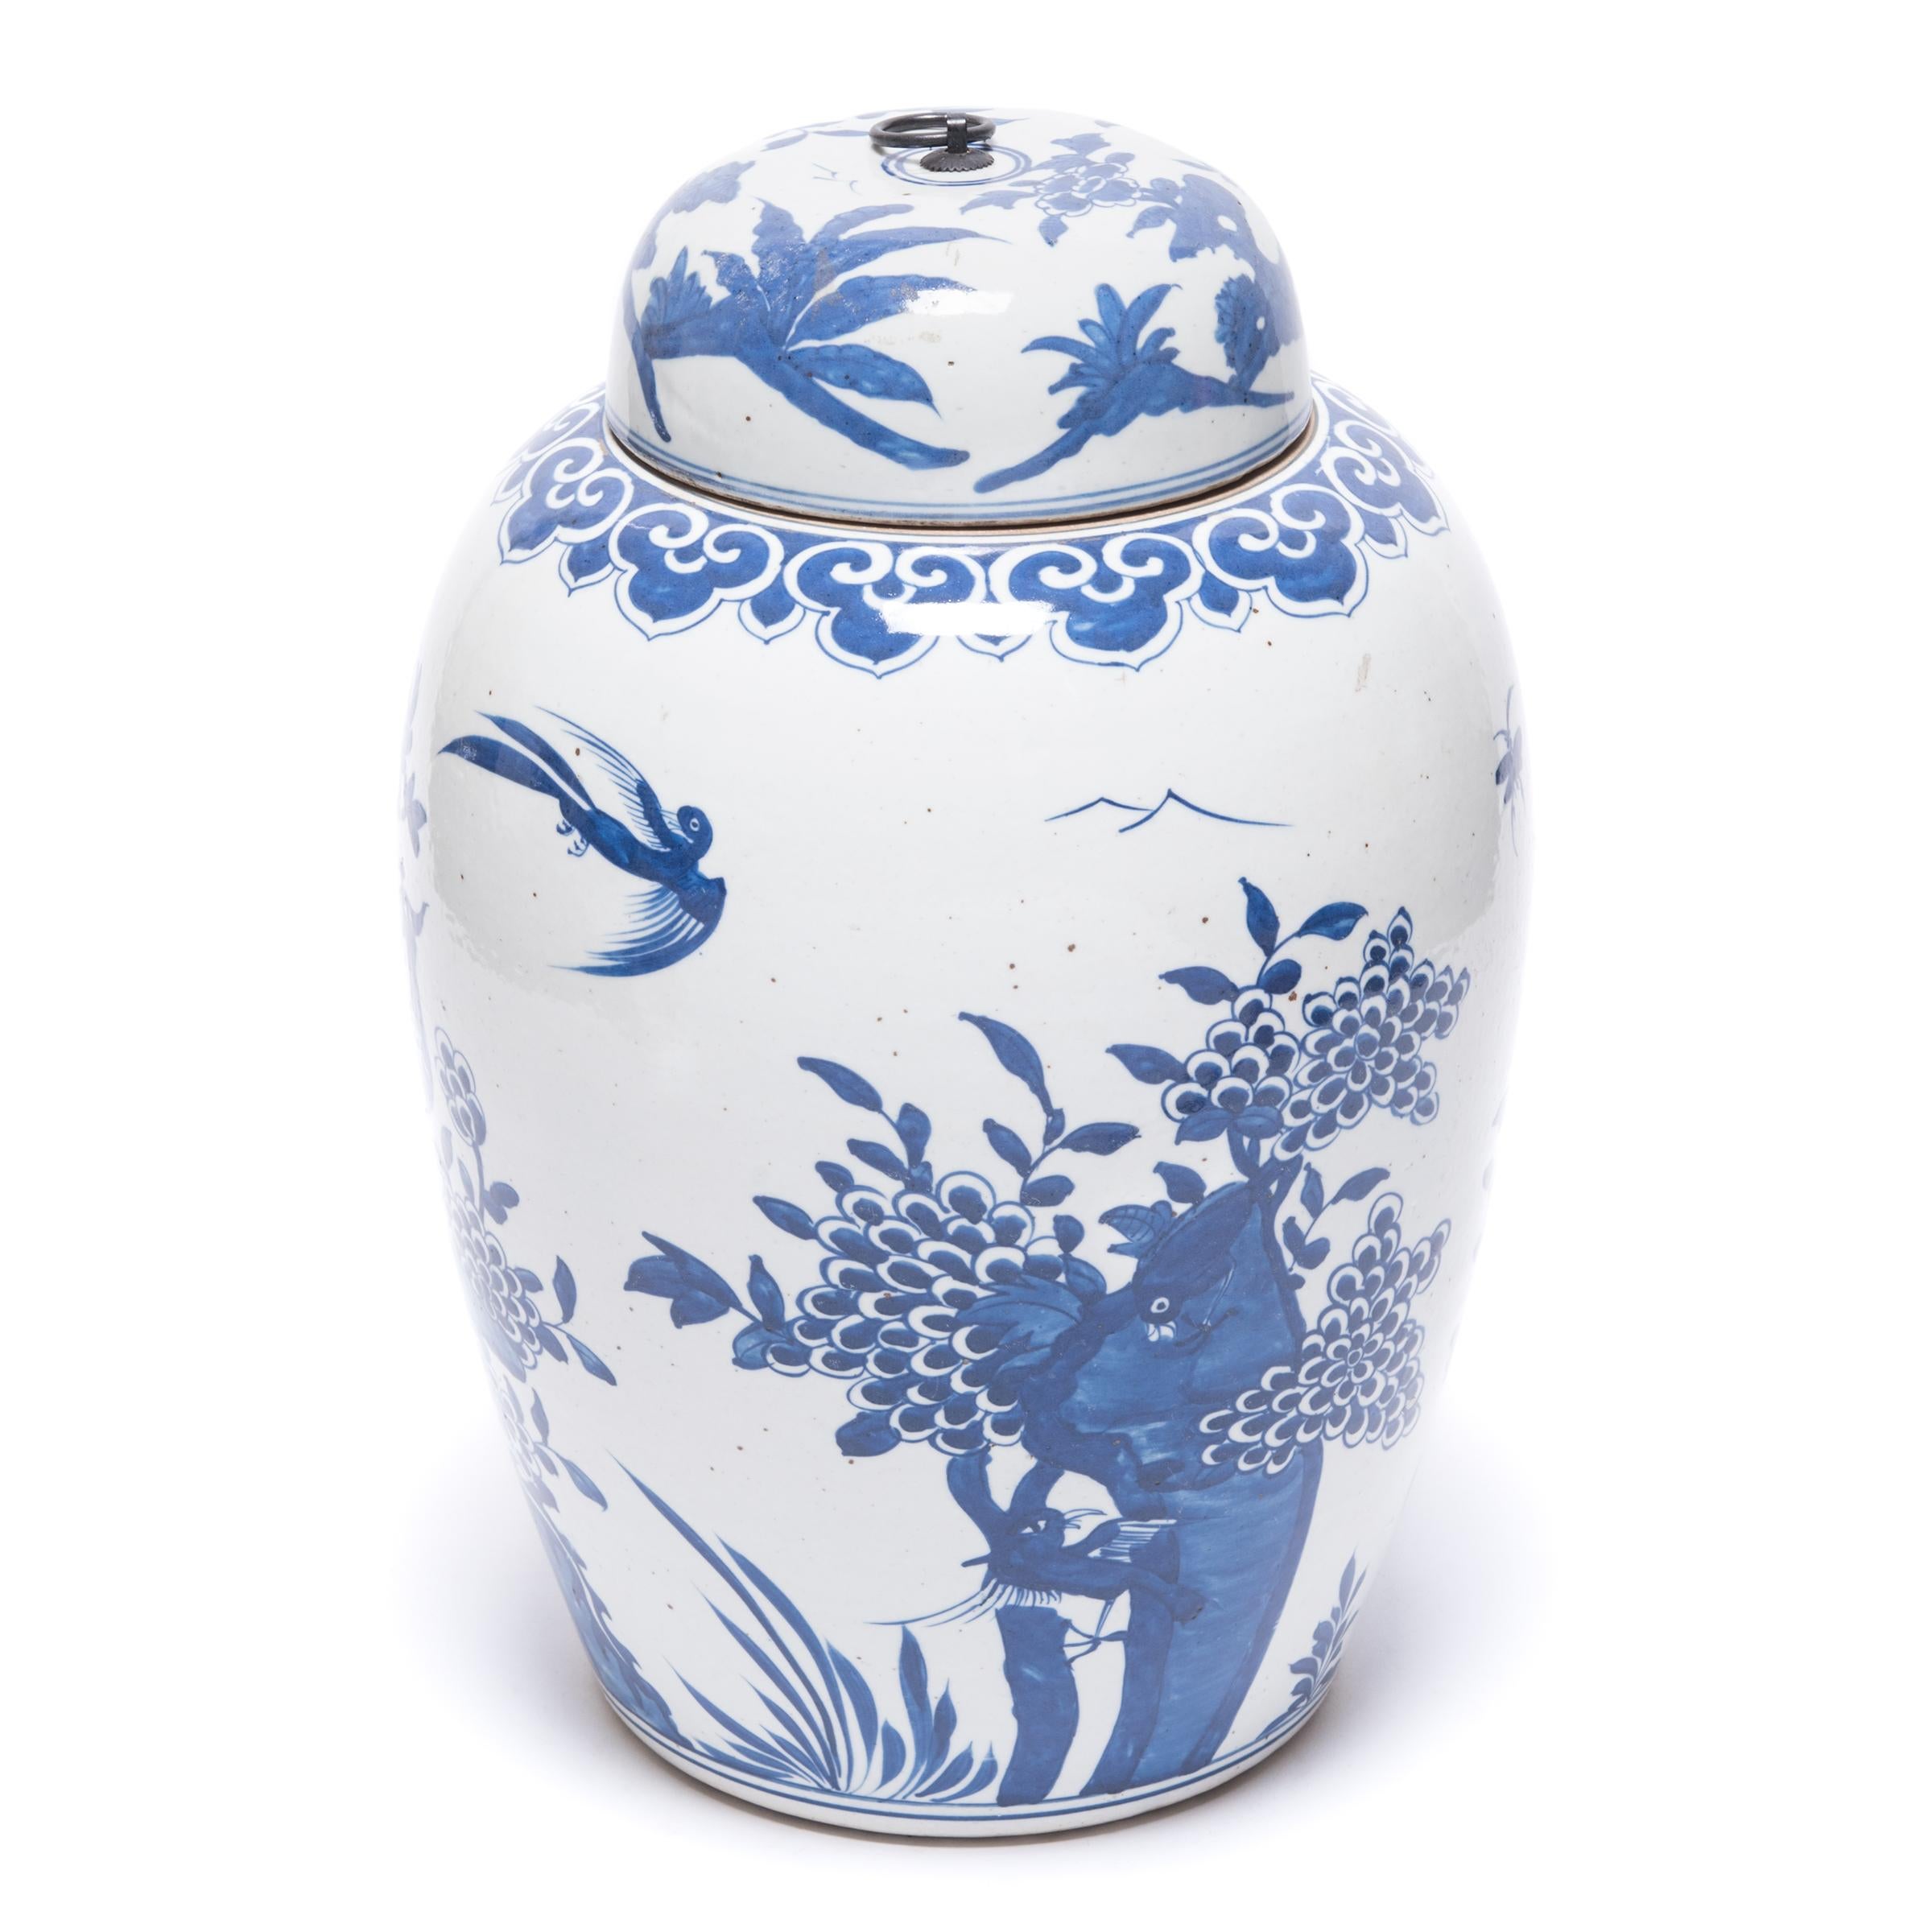 Conçue pour conserver les feuilles de thé, cette jarre n'en est pas moins un exemple étonnant de porcelaine bleue et blanche. Entourés de pivoines et de chrysanthèmes en fleurs, deux phénix sont perchés sur un affleurement rocheux. Le plumage du